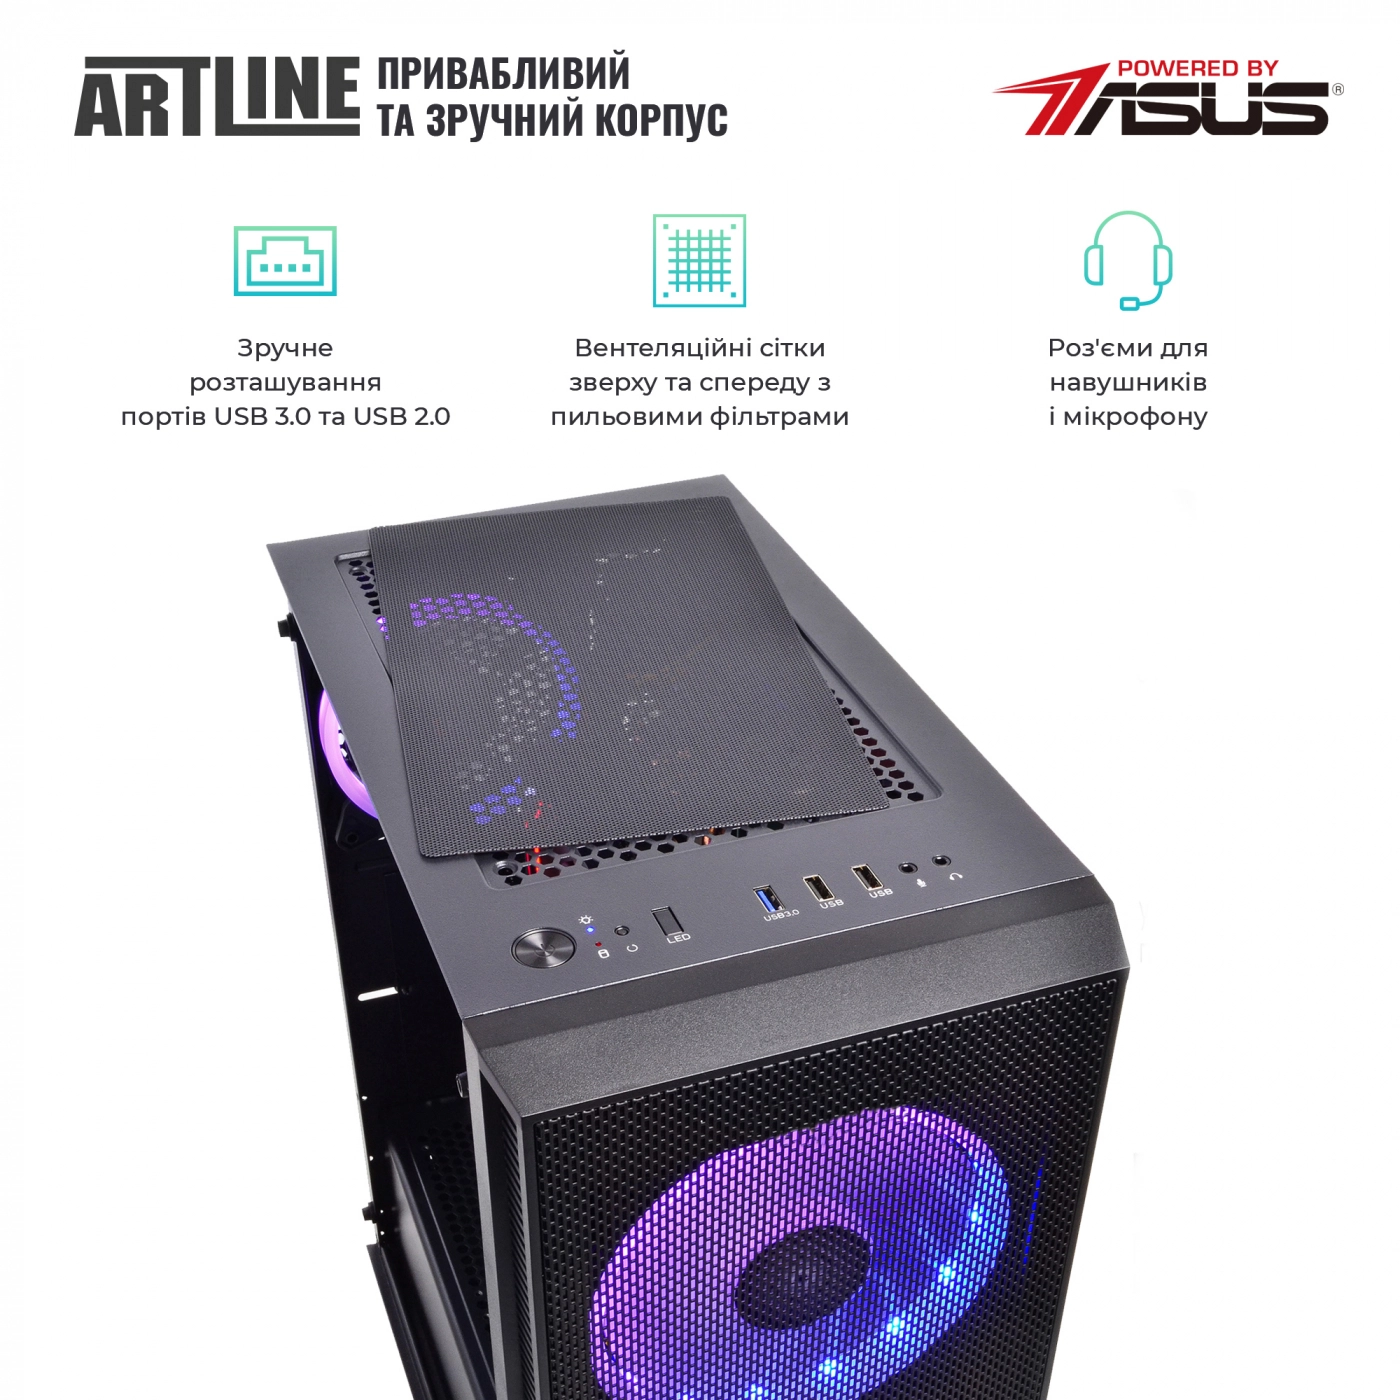 Купить Компьютер ARTLINE Gaming X73v21 - фото 4